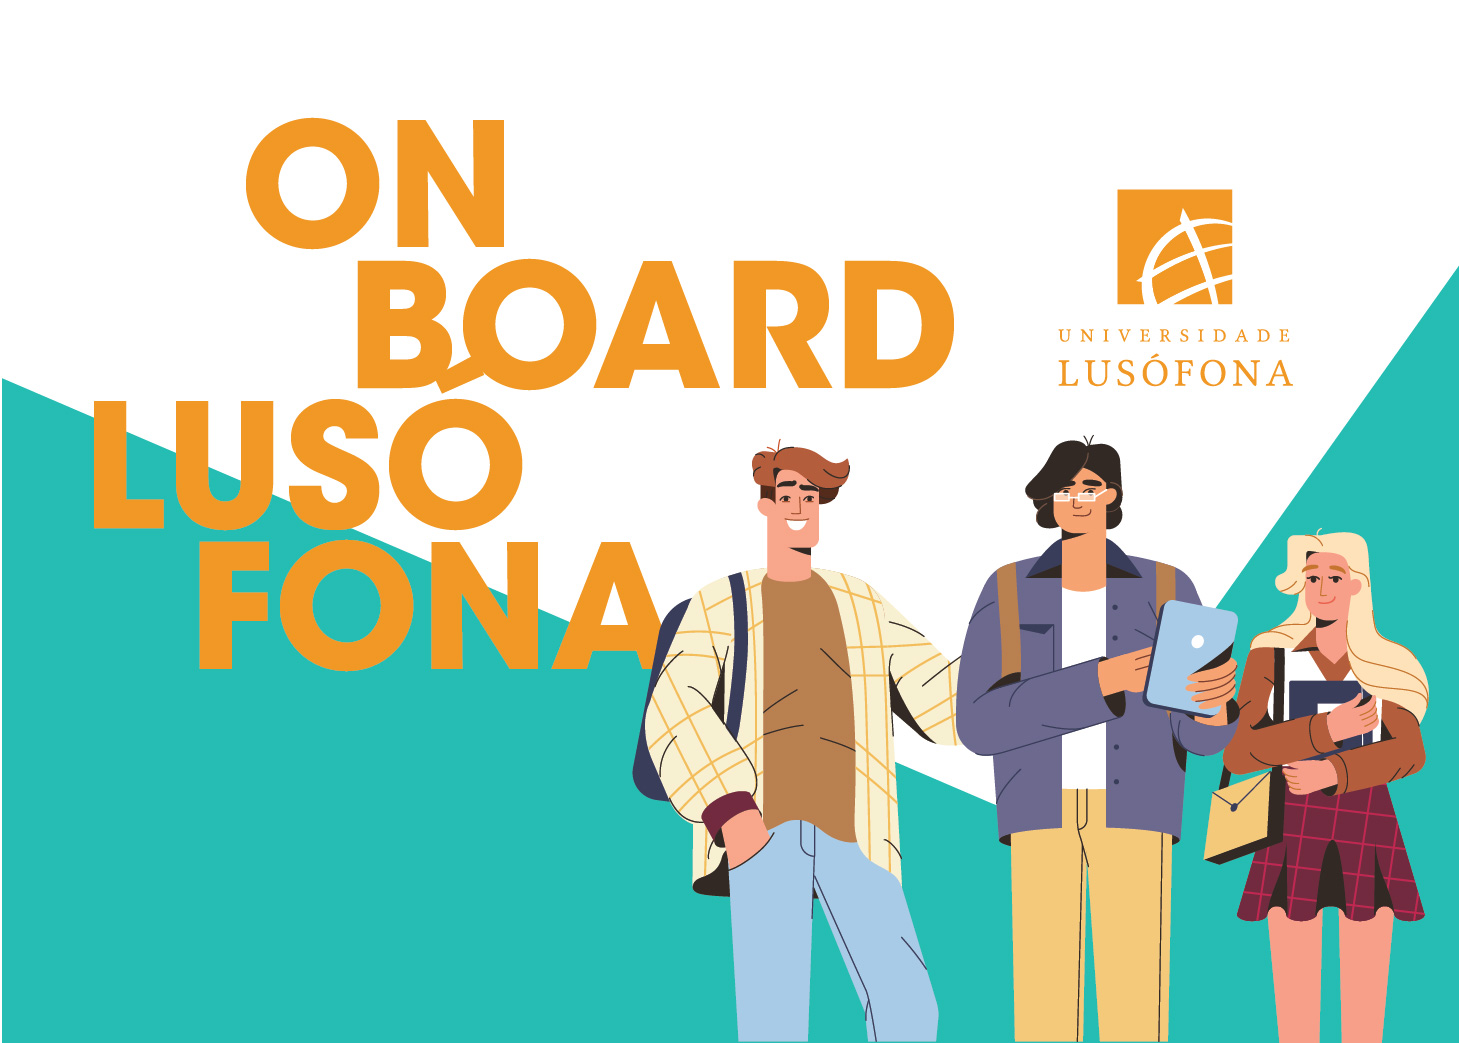 Welcome on board! - Universidade Lusófona ONBOARD